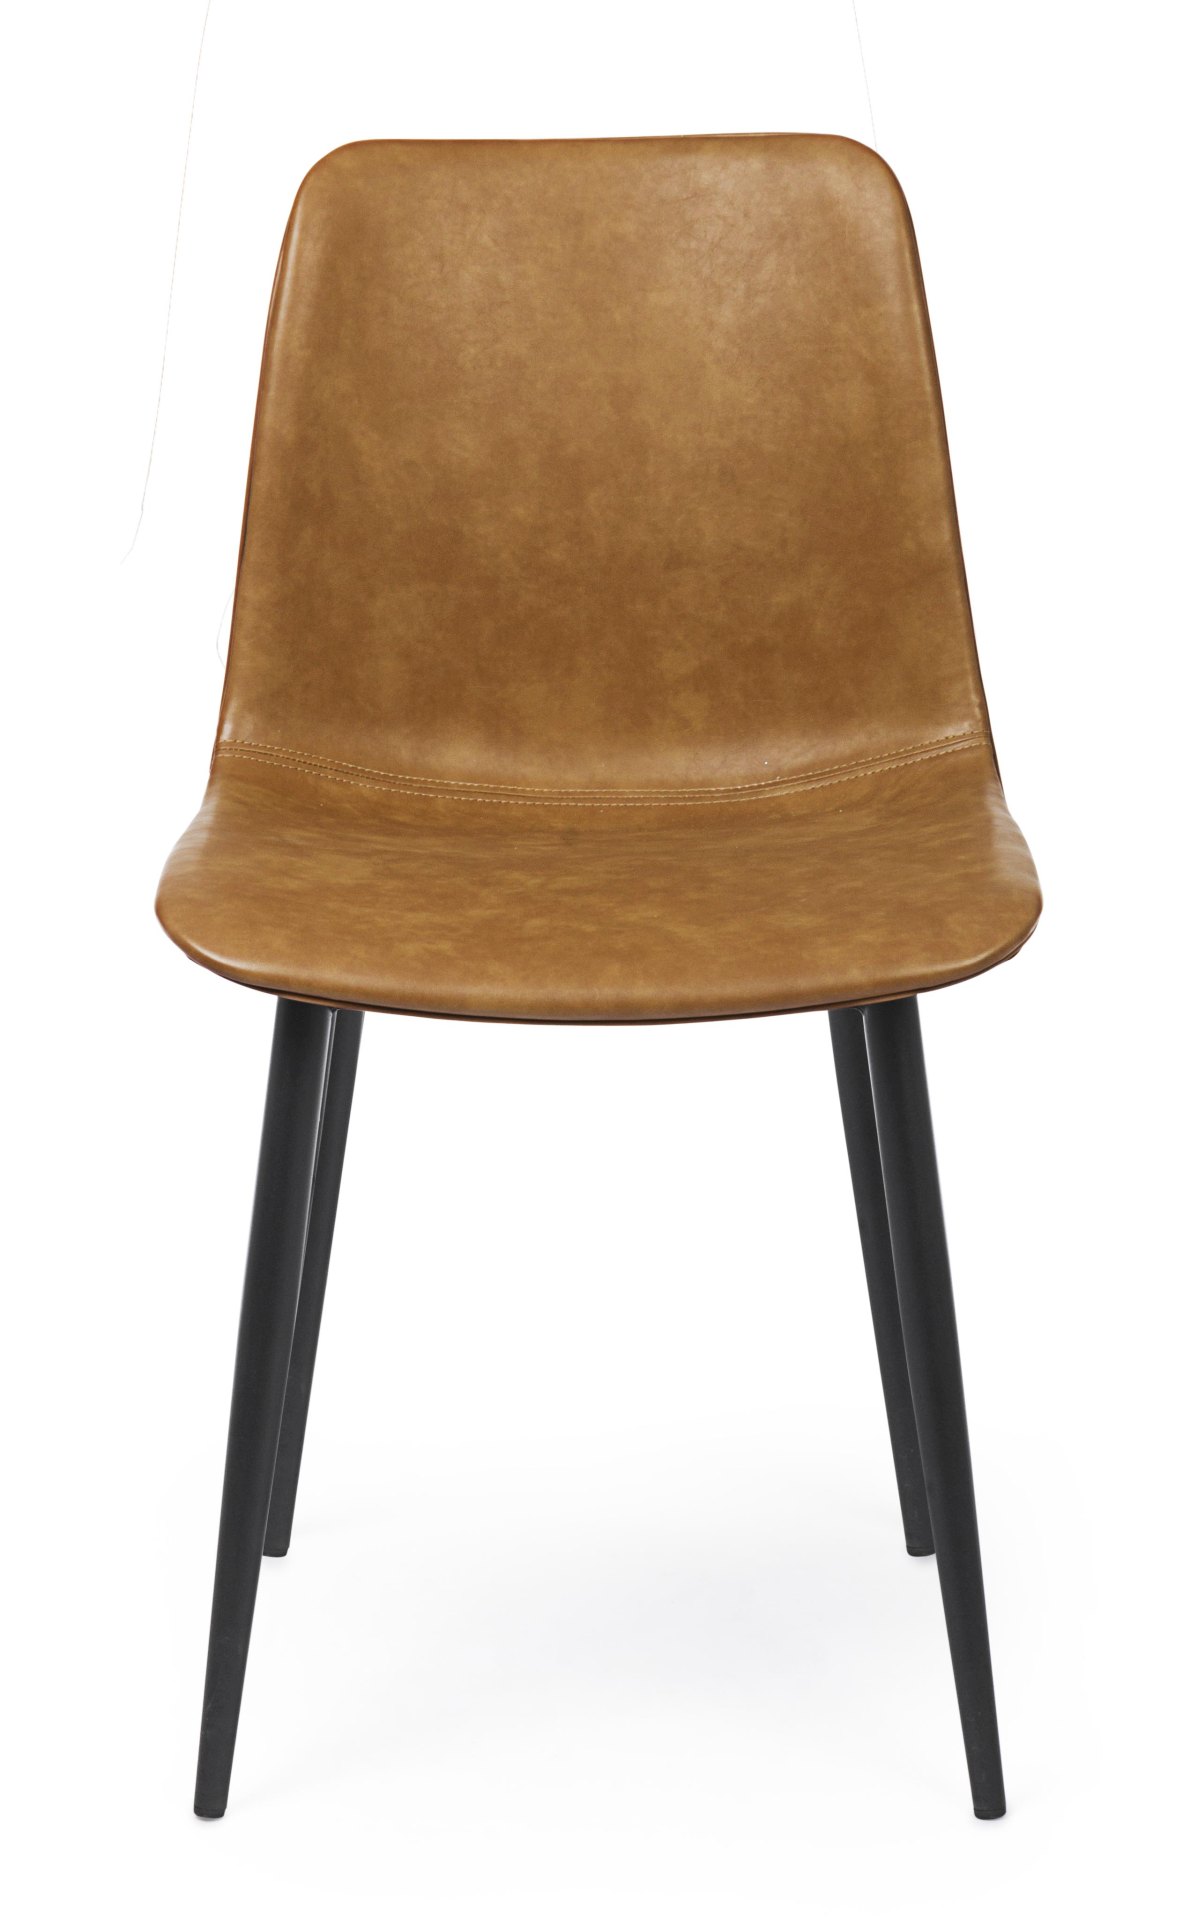 Der Esszimmerstuhl Kyra überzeugt mit seinem modernen Design. Gefertigt wurde der Stuhl aus Kunstleder, welcher einen Cognac Farbton besitzt. Das Gestell ist aus Metall und ist Schwarz. Die Sitzhöhe beträgt 44 cm.